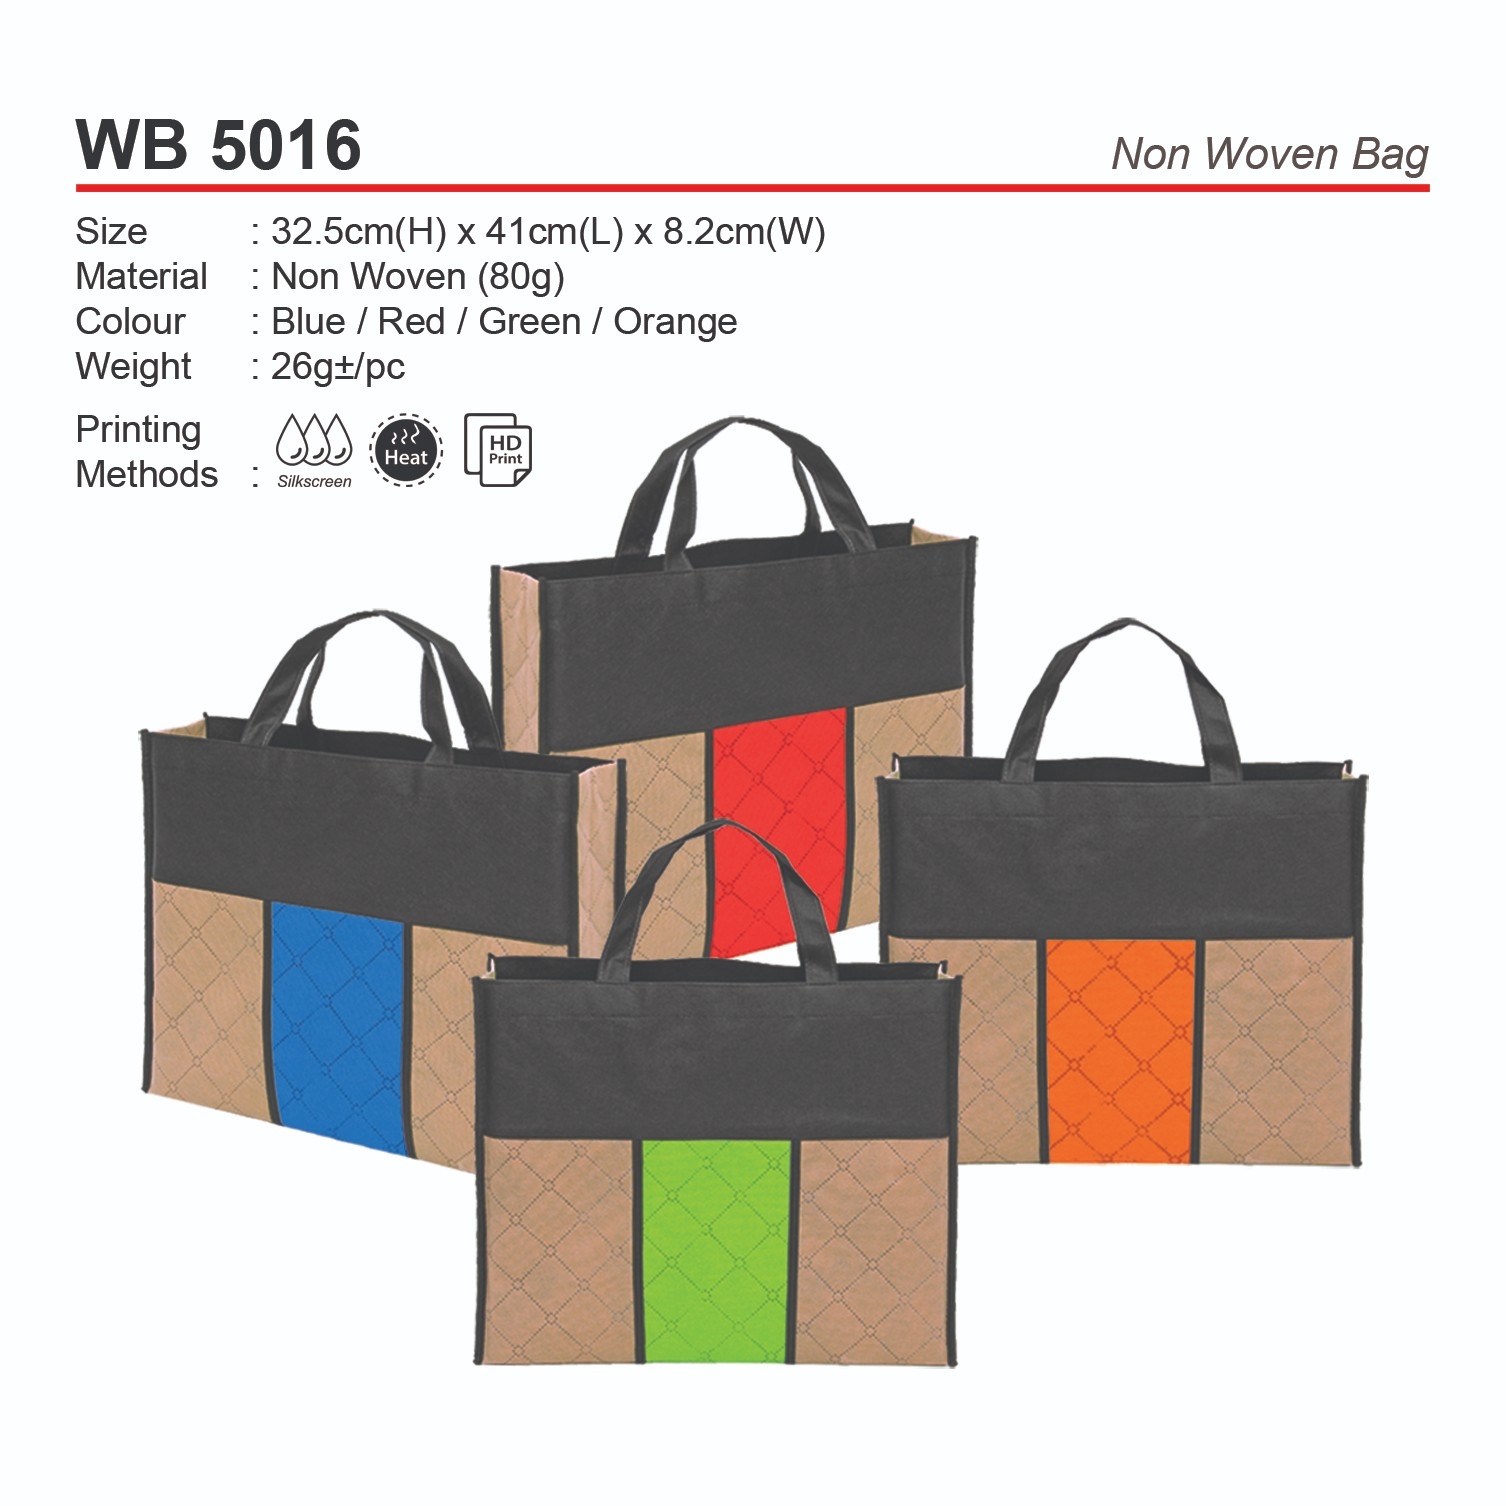 WB5016 Non Woven Bag (A)